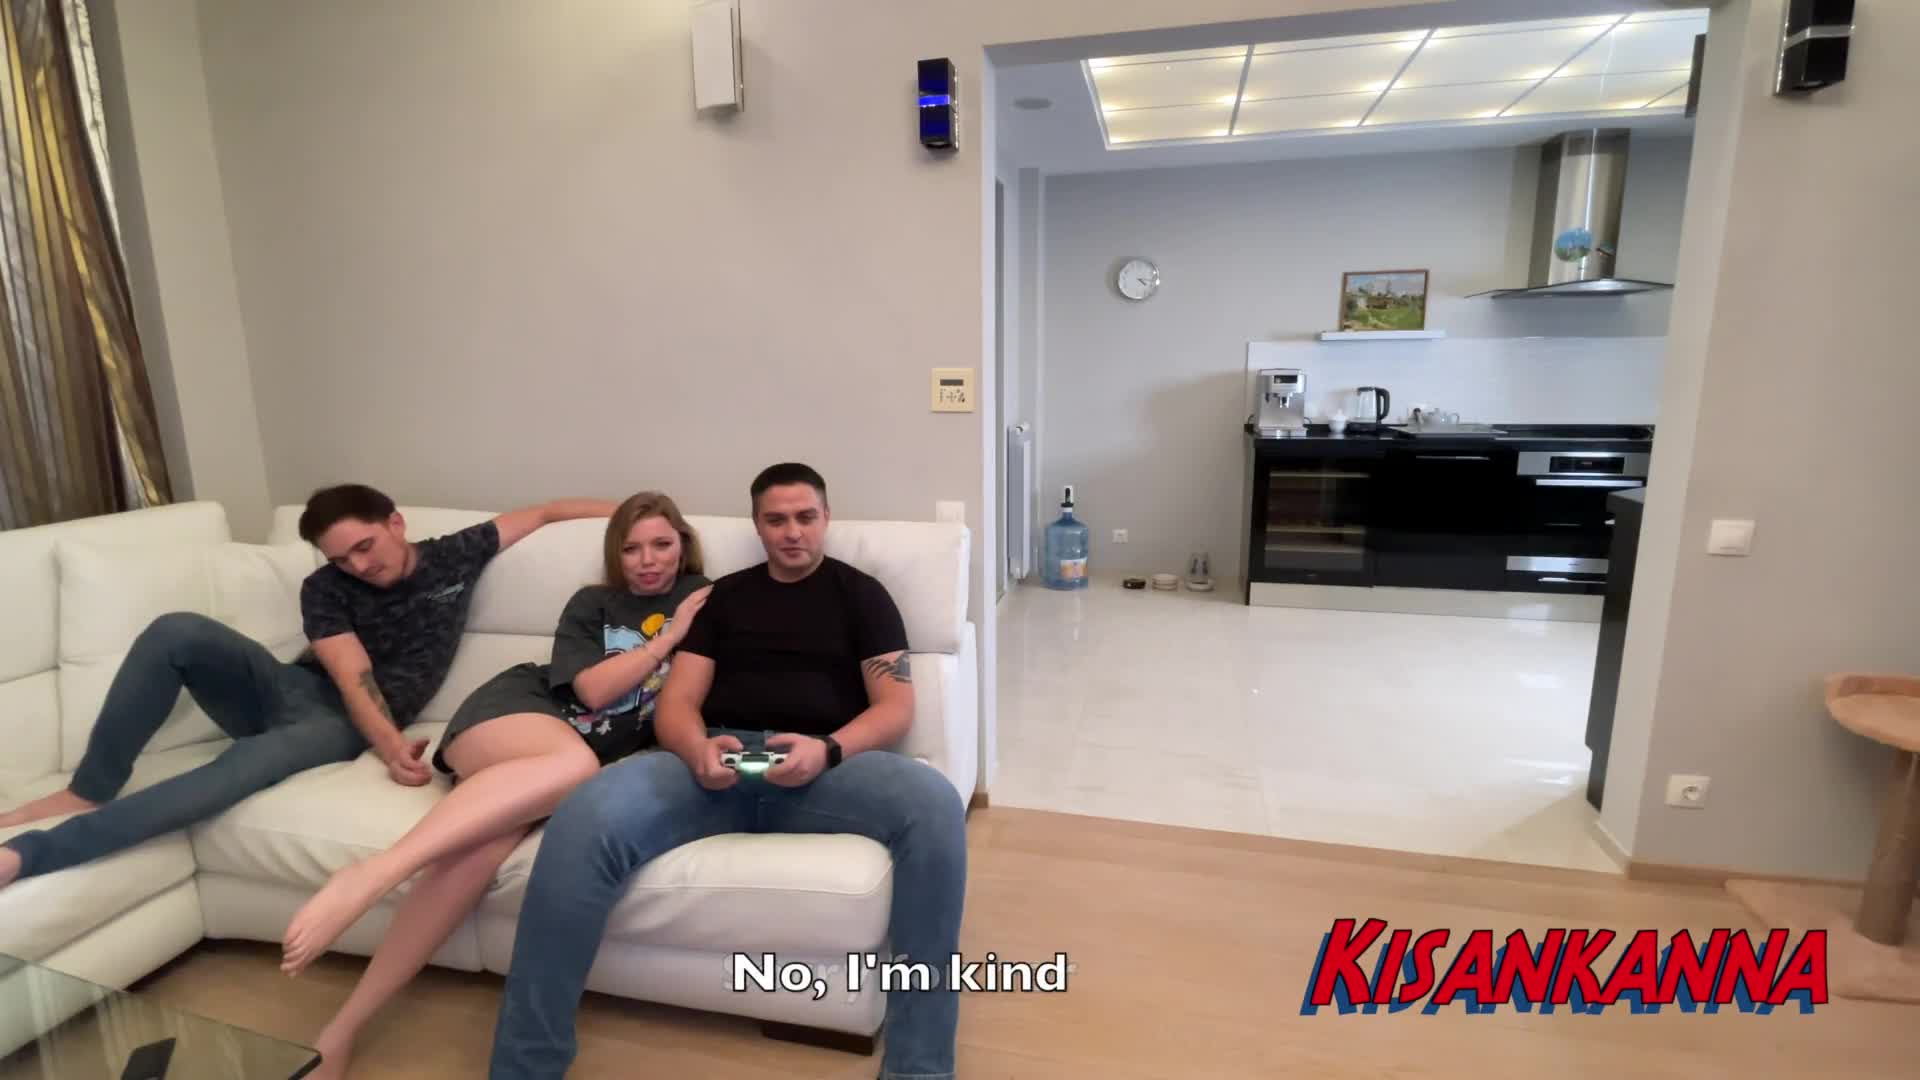 La Russe Kisankanna trompe à nouveau son petit ami alors quelle se fait défoncer le cul incroyable dans la cuisine pendant que son petit ami joue à des jeux vidéo.